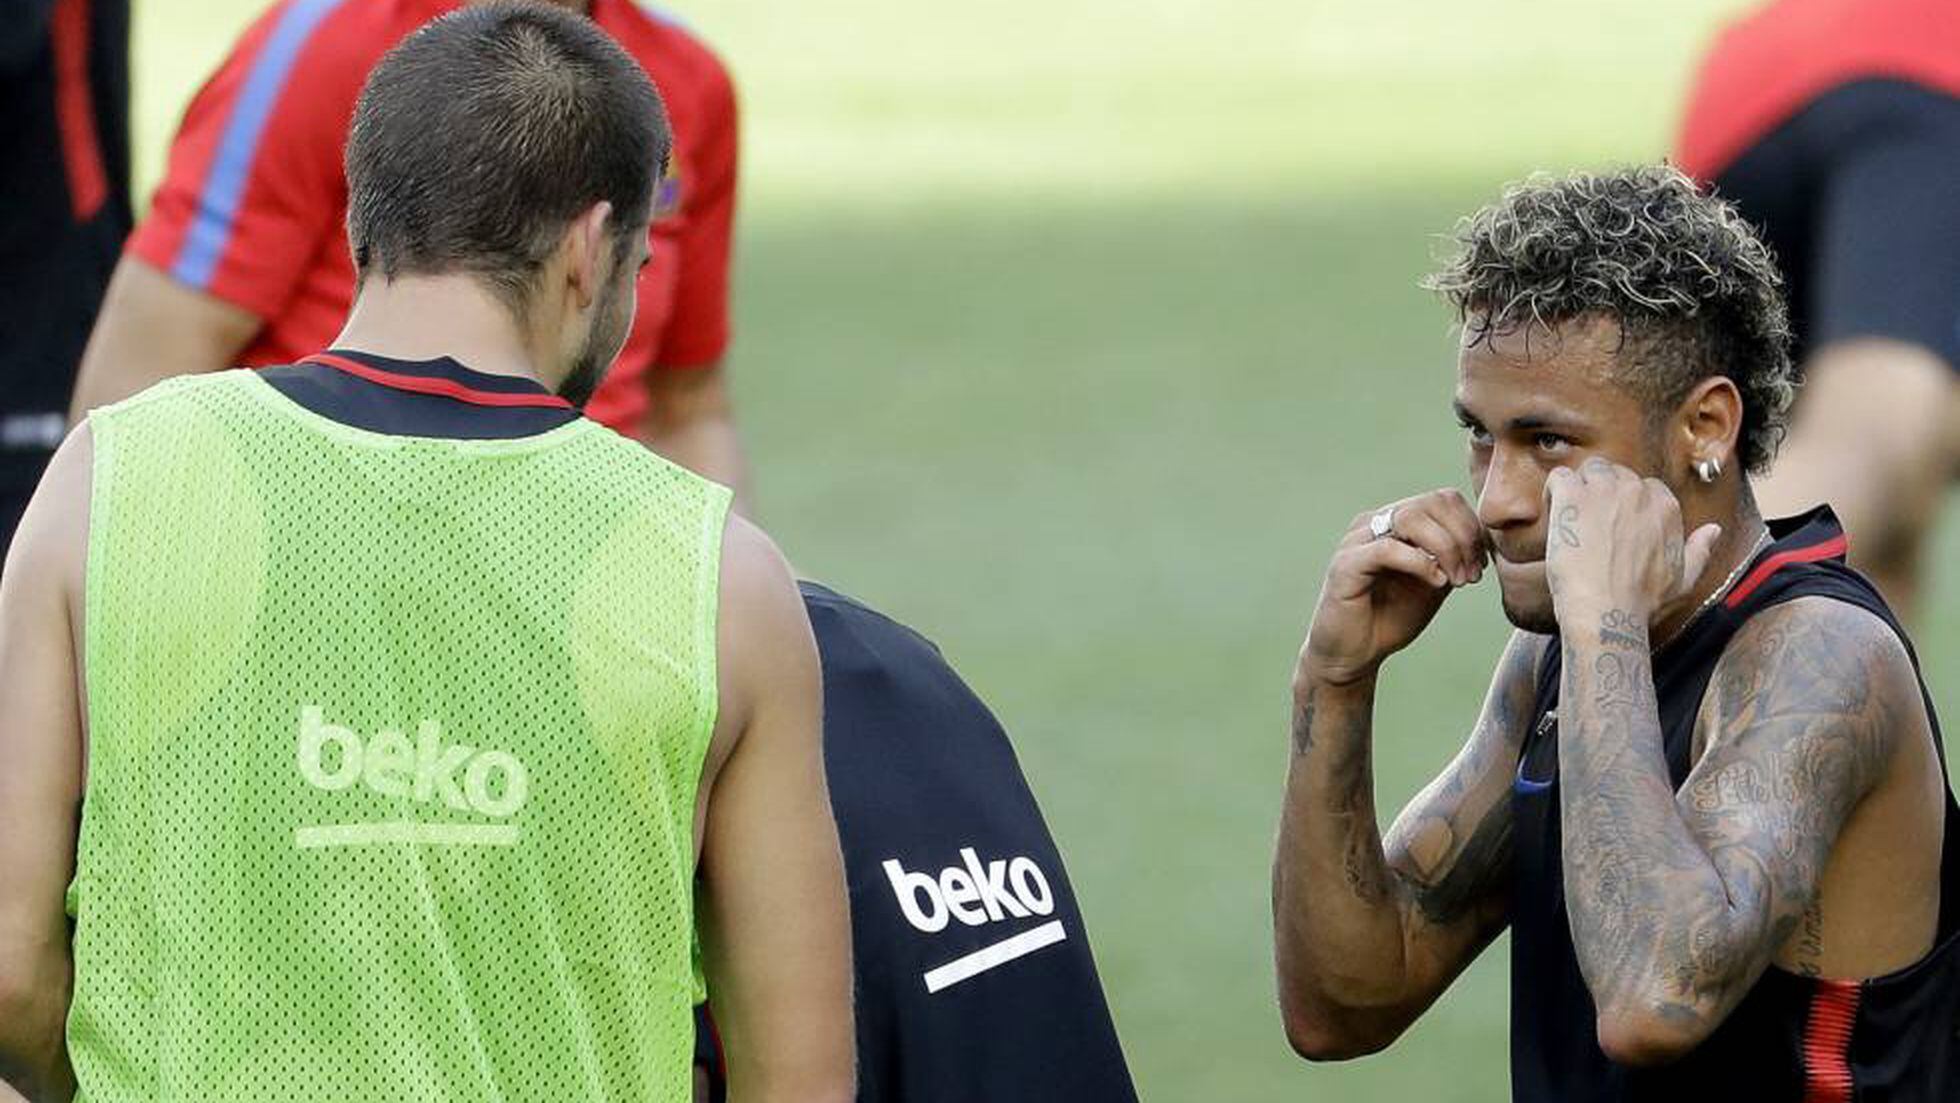 Zagueiros explicam por que é tão difícil marcar Neymar